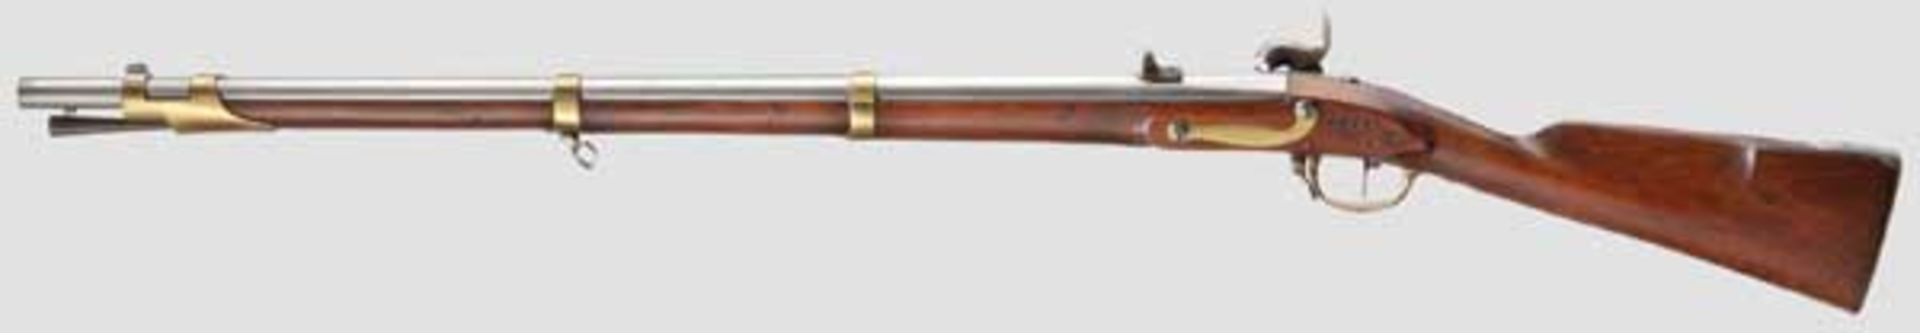 Gezogenes Pioniergewehr a/M, System Minié Gezogener Lauf im Kaliber 18,6 mm, mit blanker Seele, über - Bild 2 aus 4